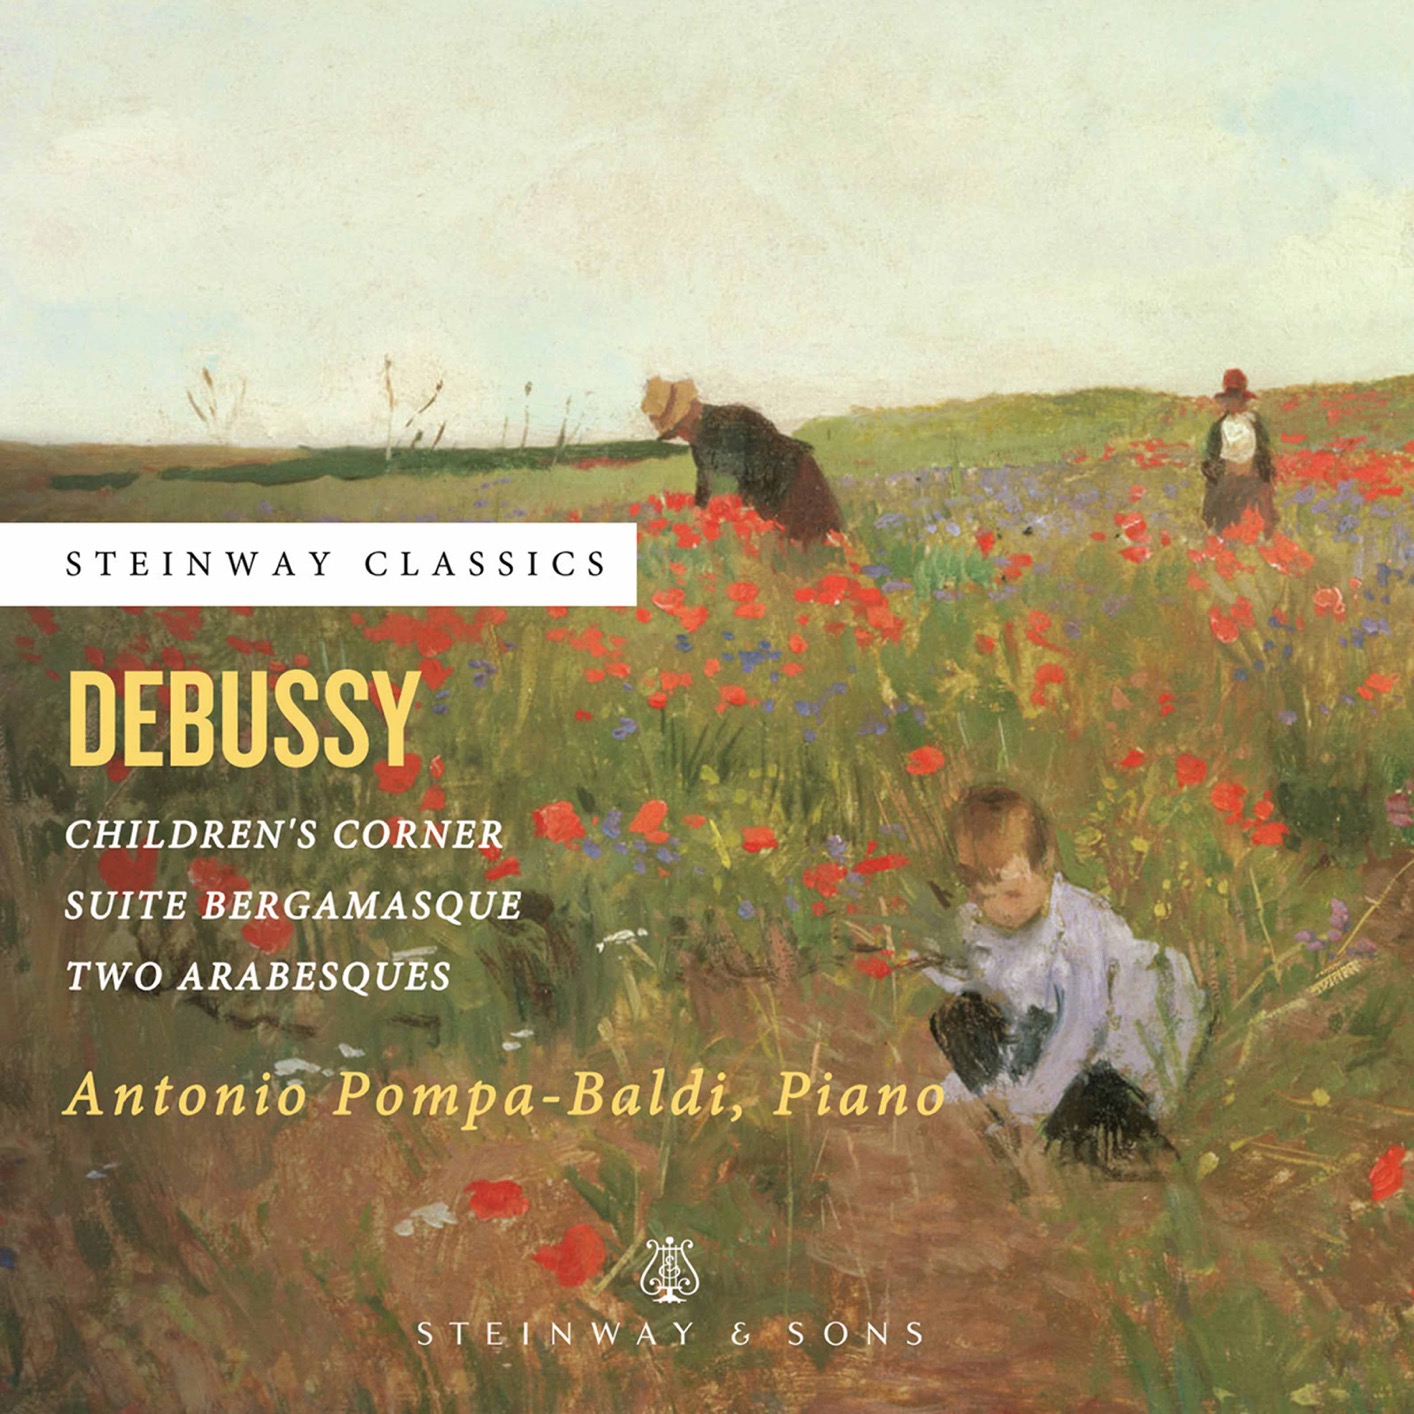 Antonio Pompa-Baldi - Debussy  Piano Works (2020) [FLAC 24bit/96kHz]